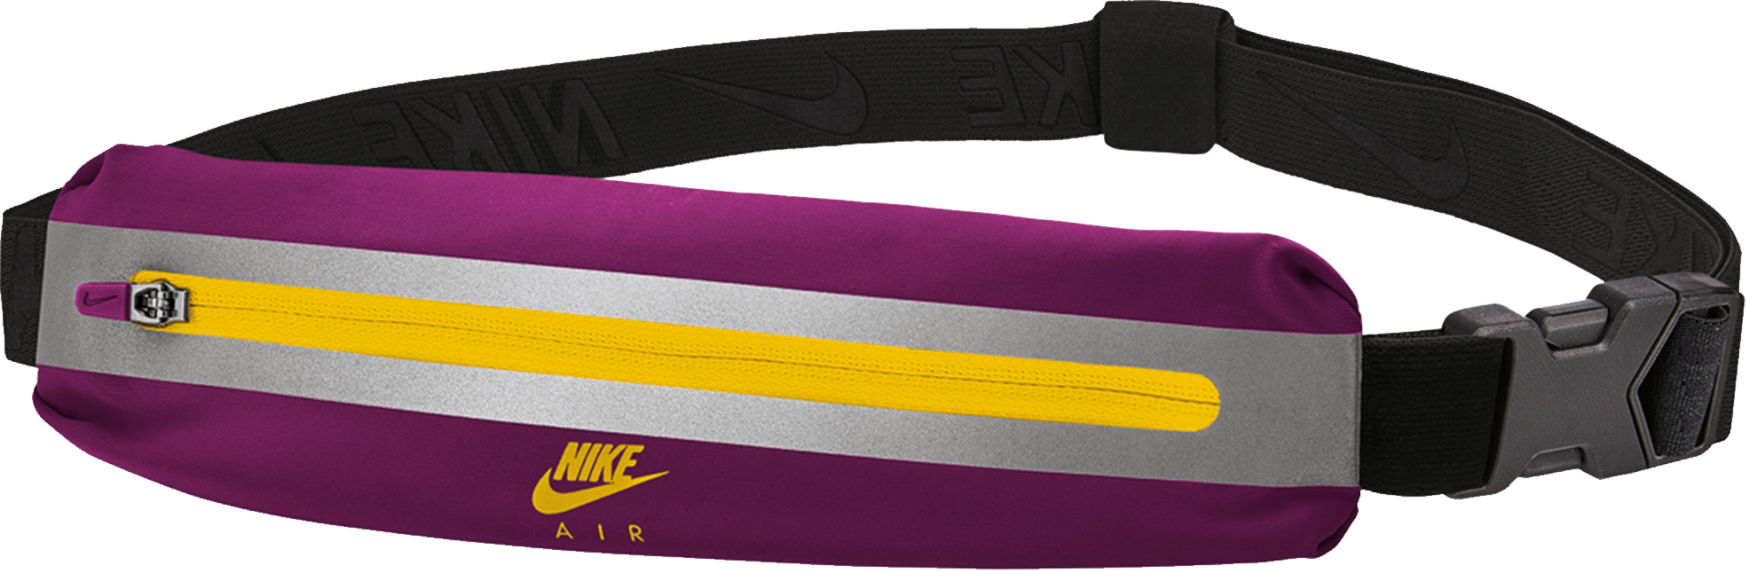 Gürteltasche Nike SLIM WAIST PACK 3.0